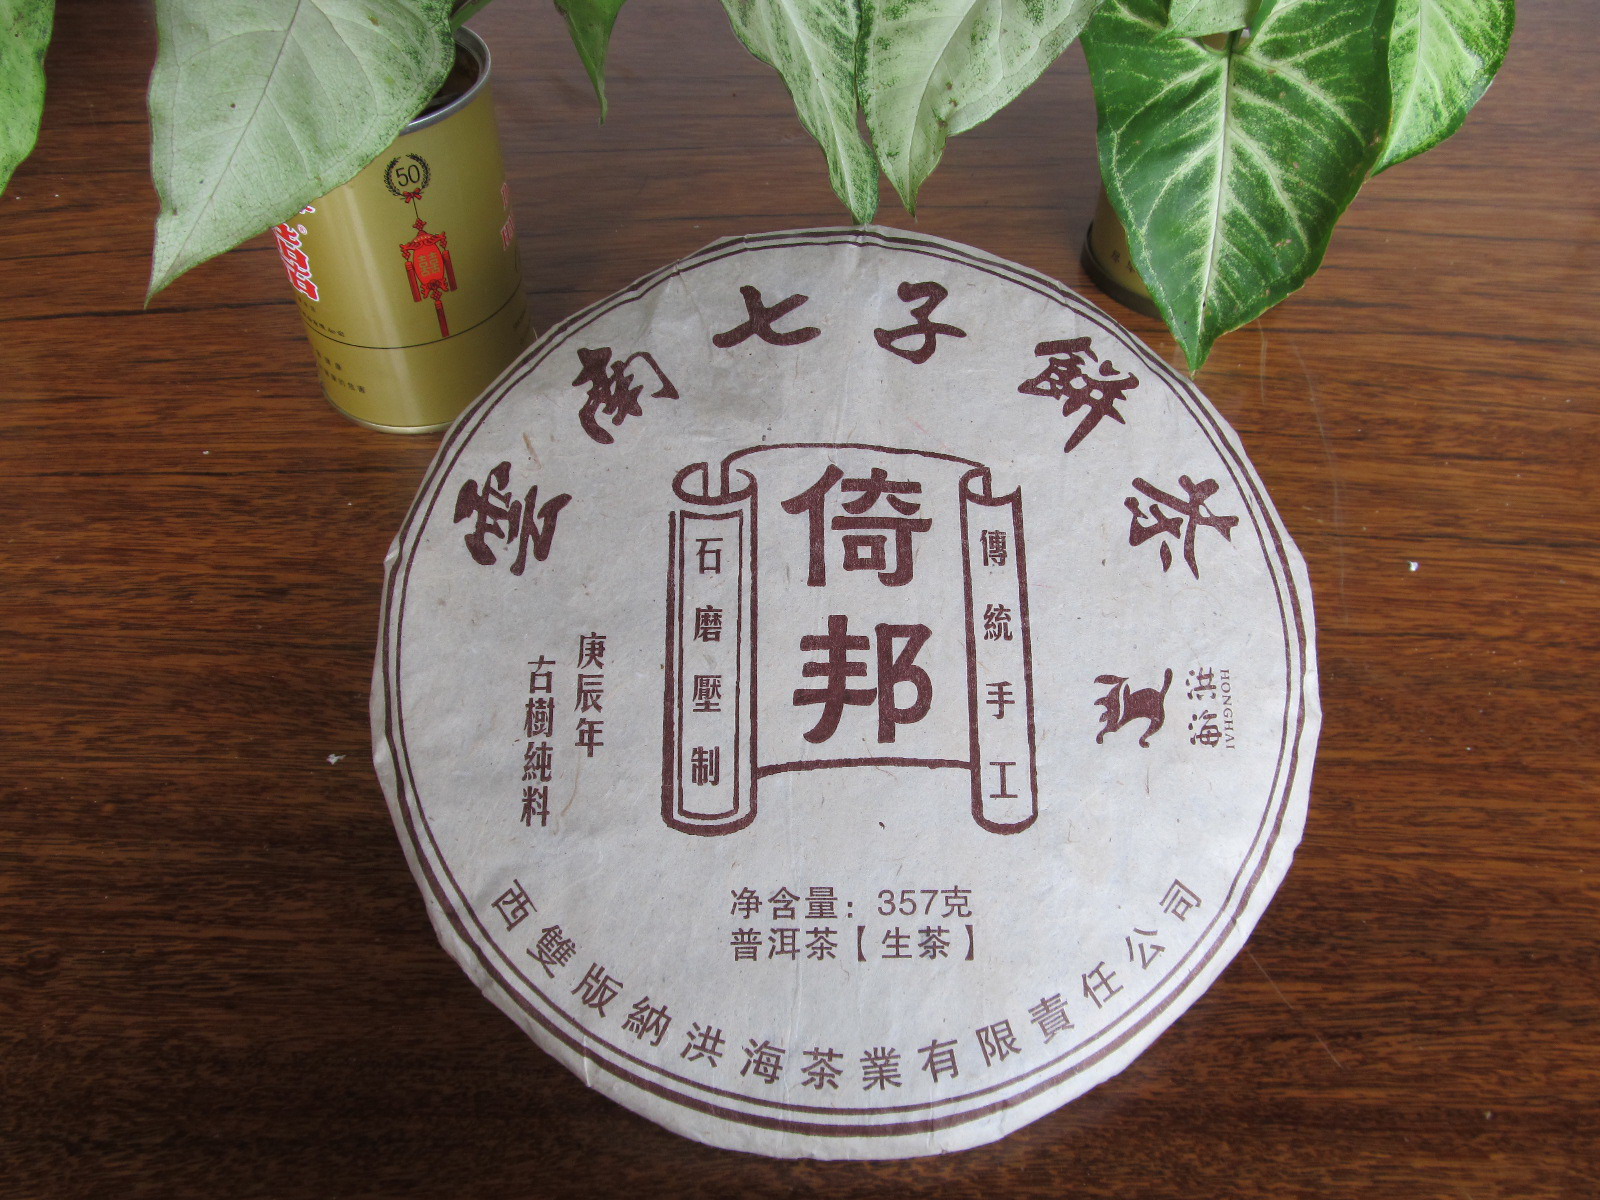 2000年倚邦老茶